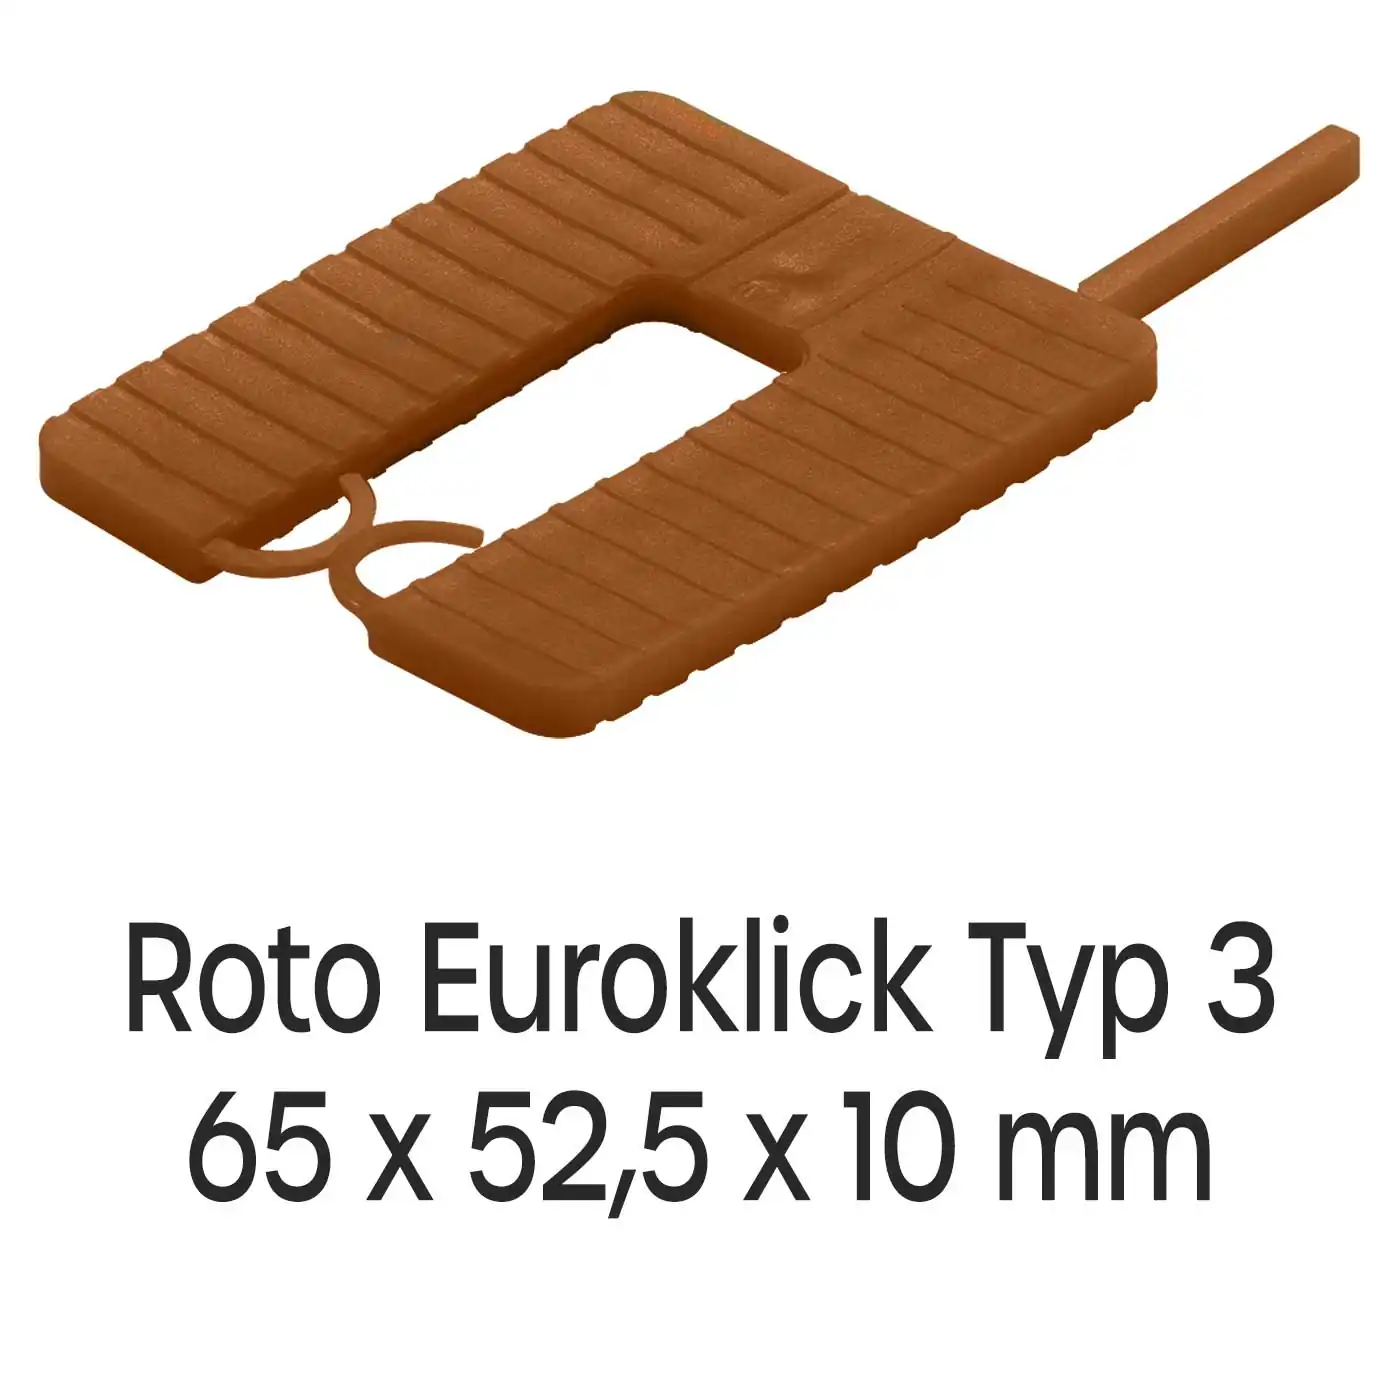 Distanzplatten Roto Euroklick Typ 2 65 x 52,5 x 10 mm 500 Stück